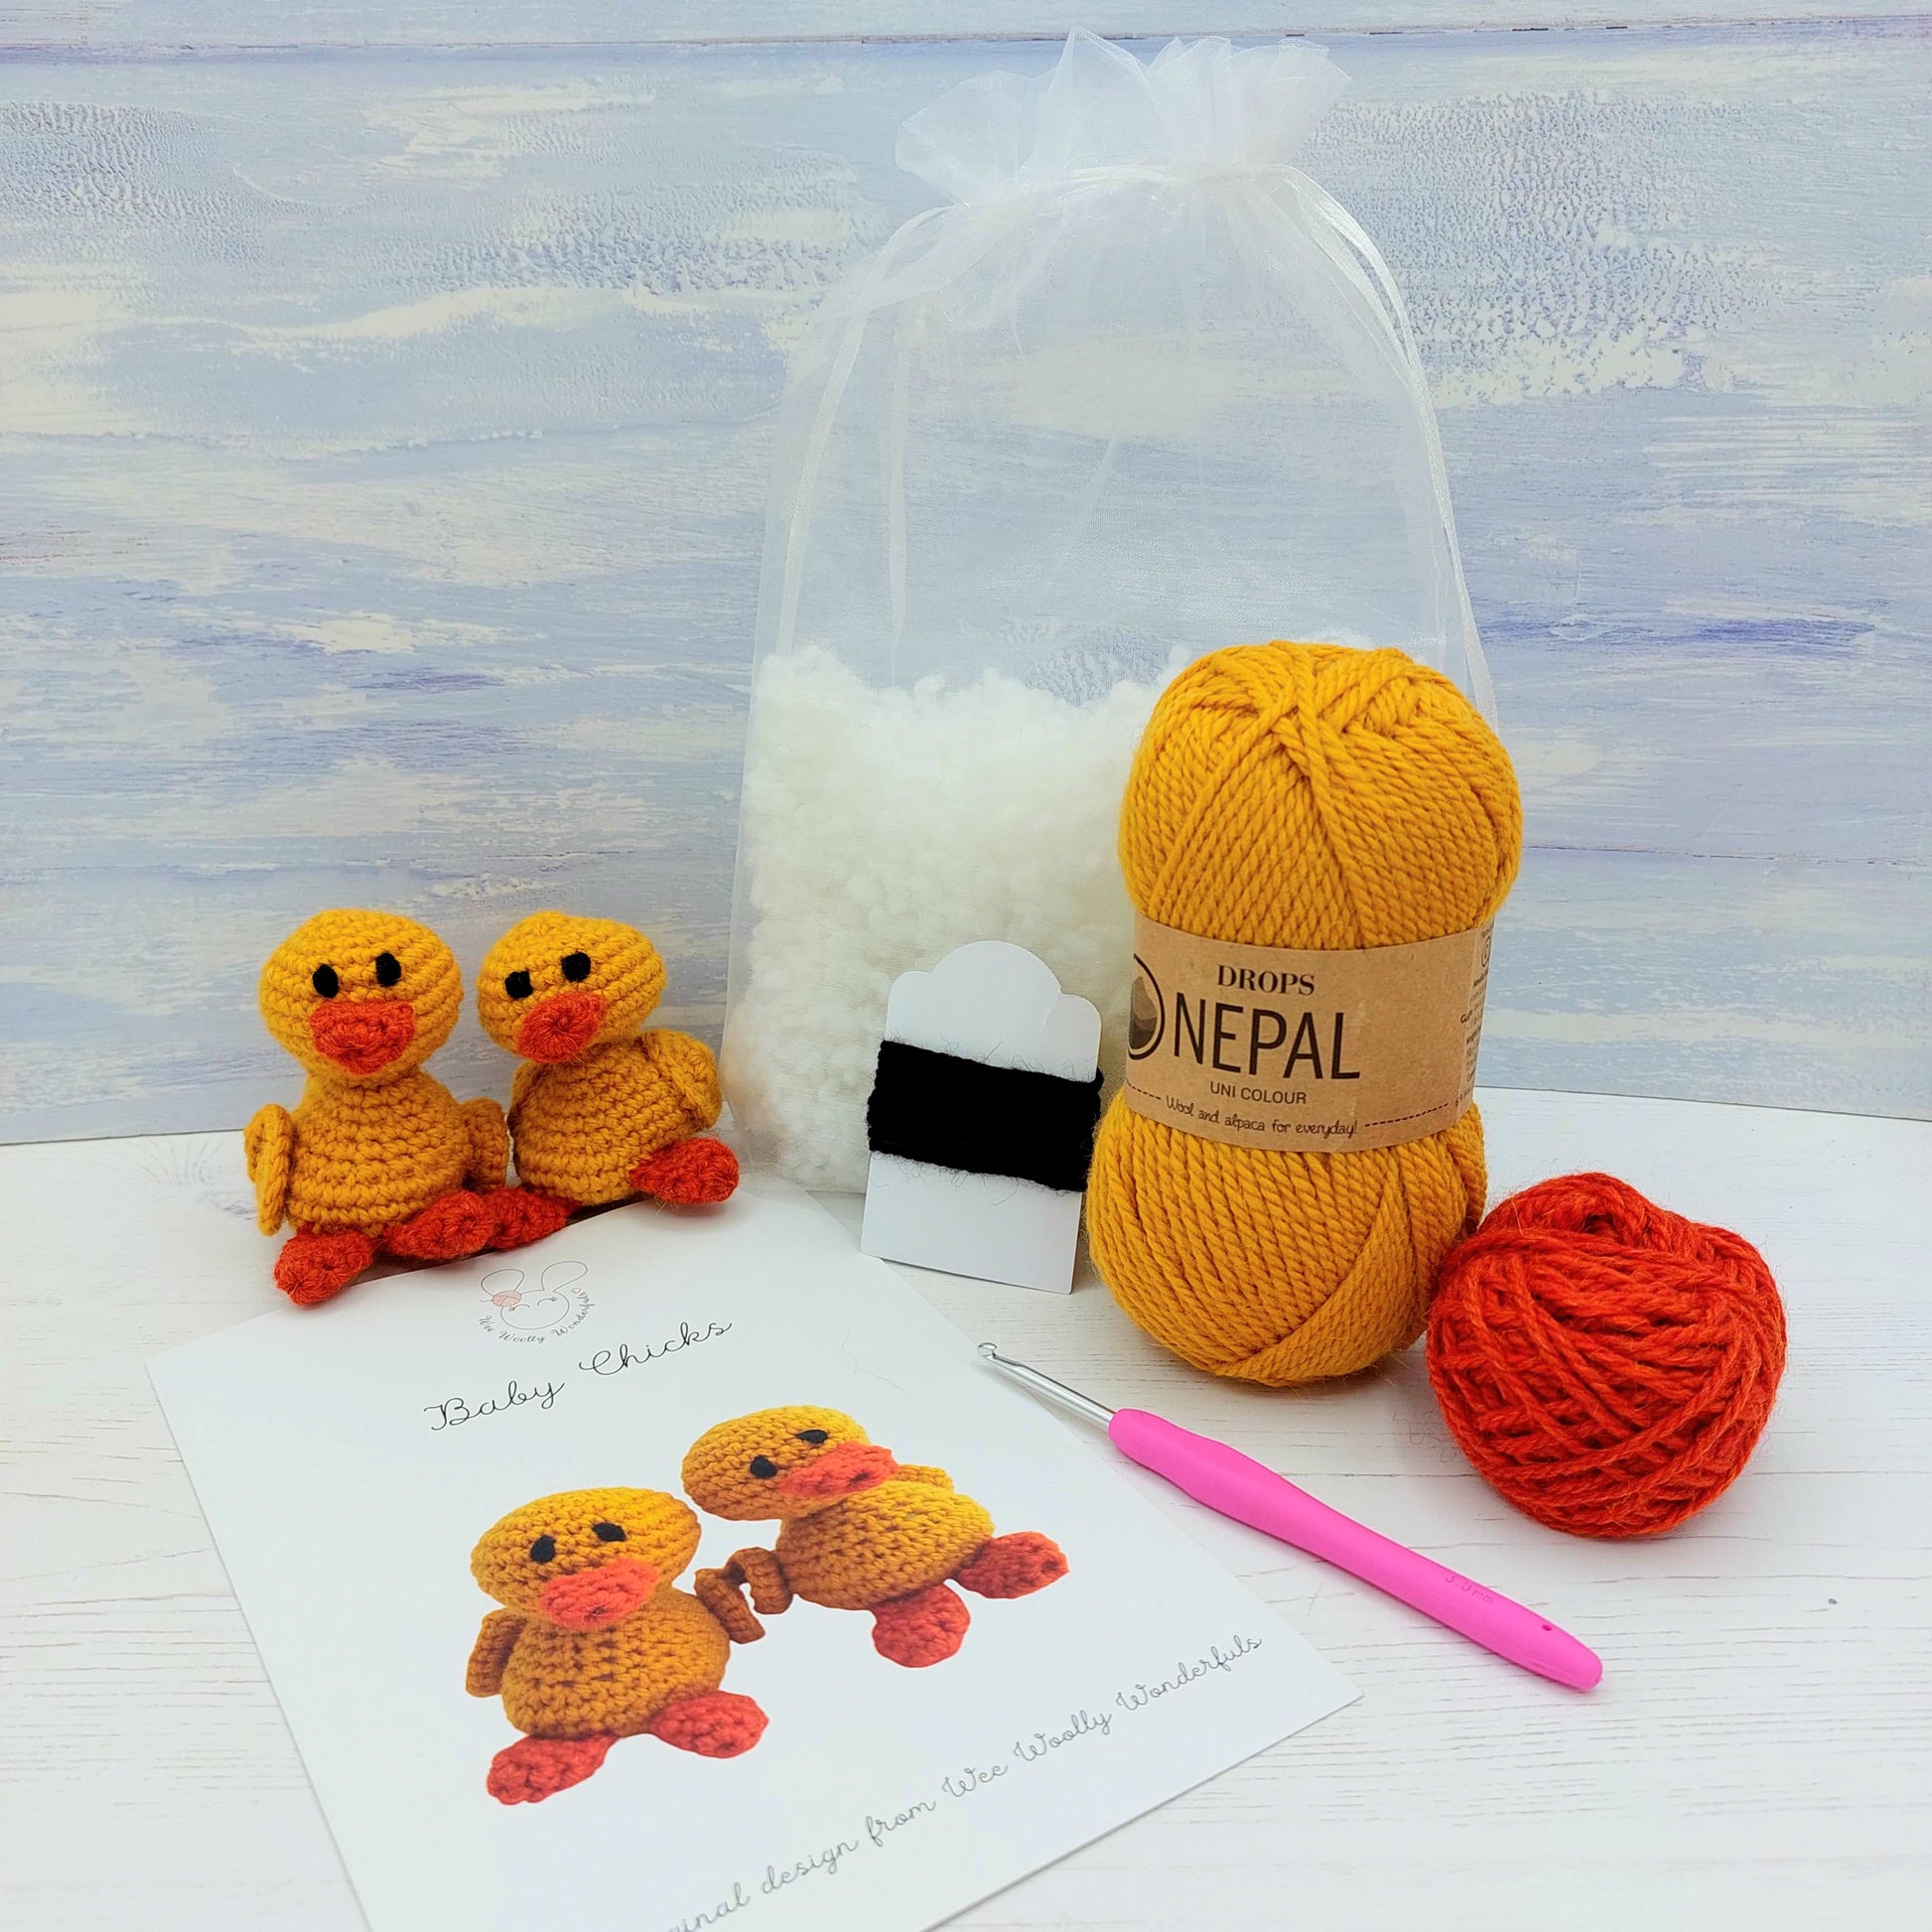 Yellow and orange yarn, stuffing, pattern and crochet hook